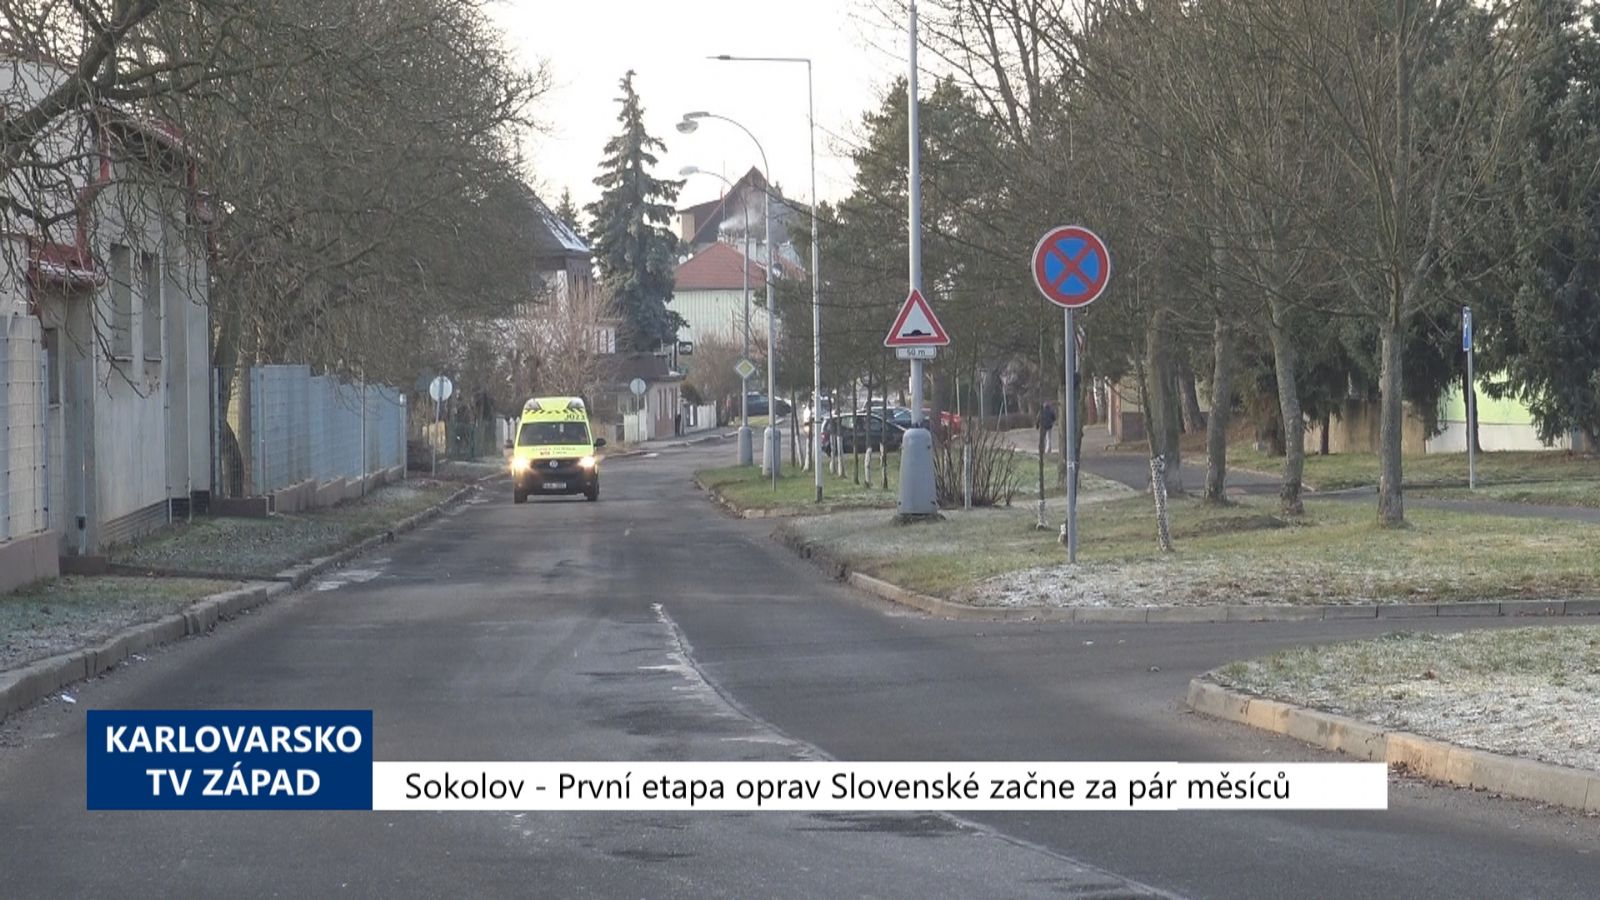 Sokolov: První etapa oprav Slovenské začne za pár měsíců (TV Západ)